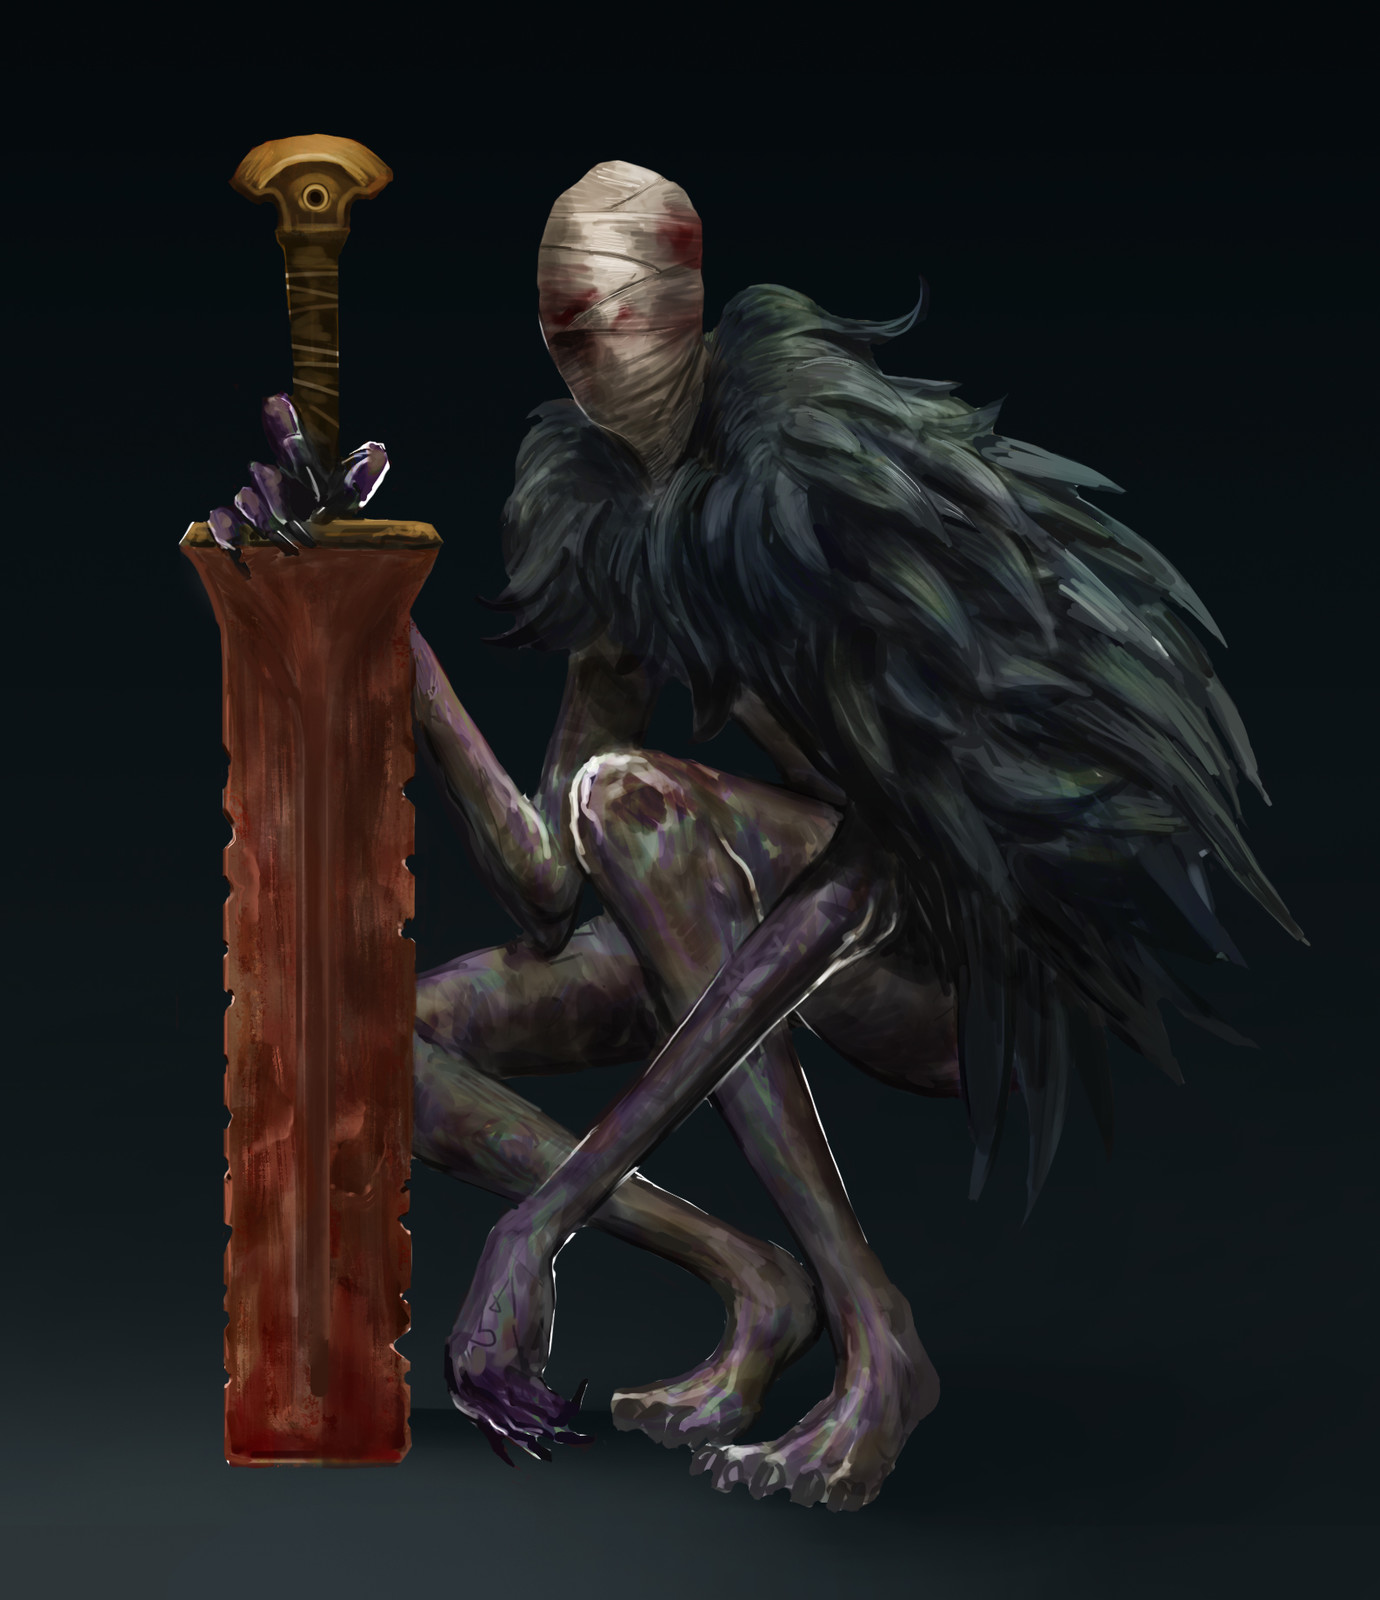 Darksouls/bloodborne inspired monster 3